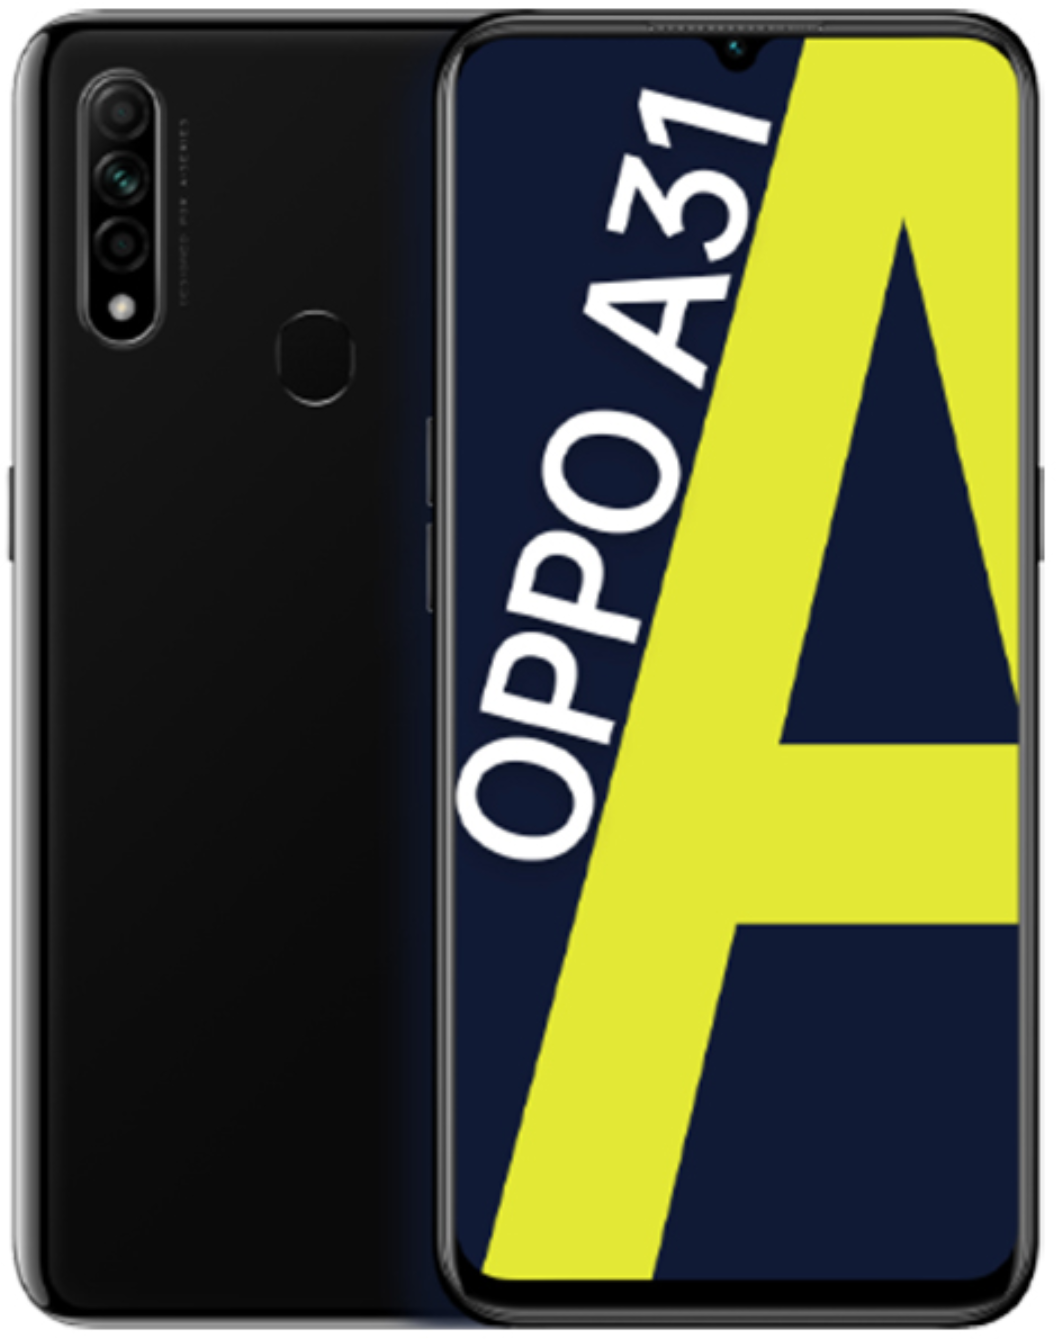 OPPO A31 Dual Sim 64GB Black (4GB RAM)